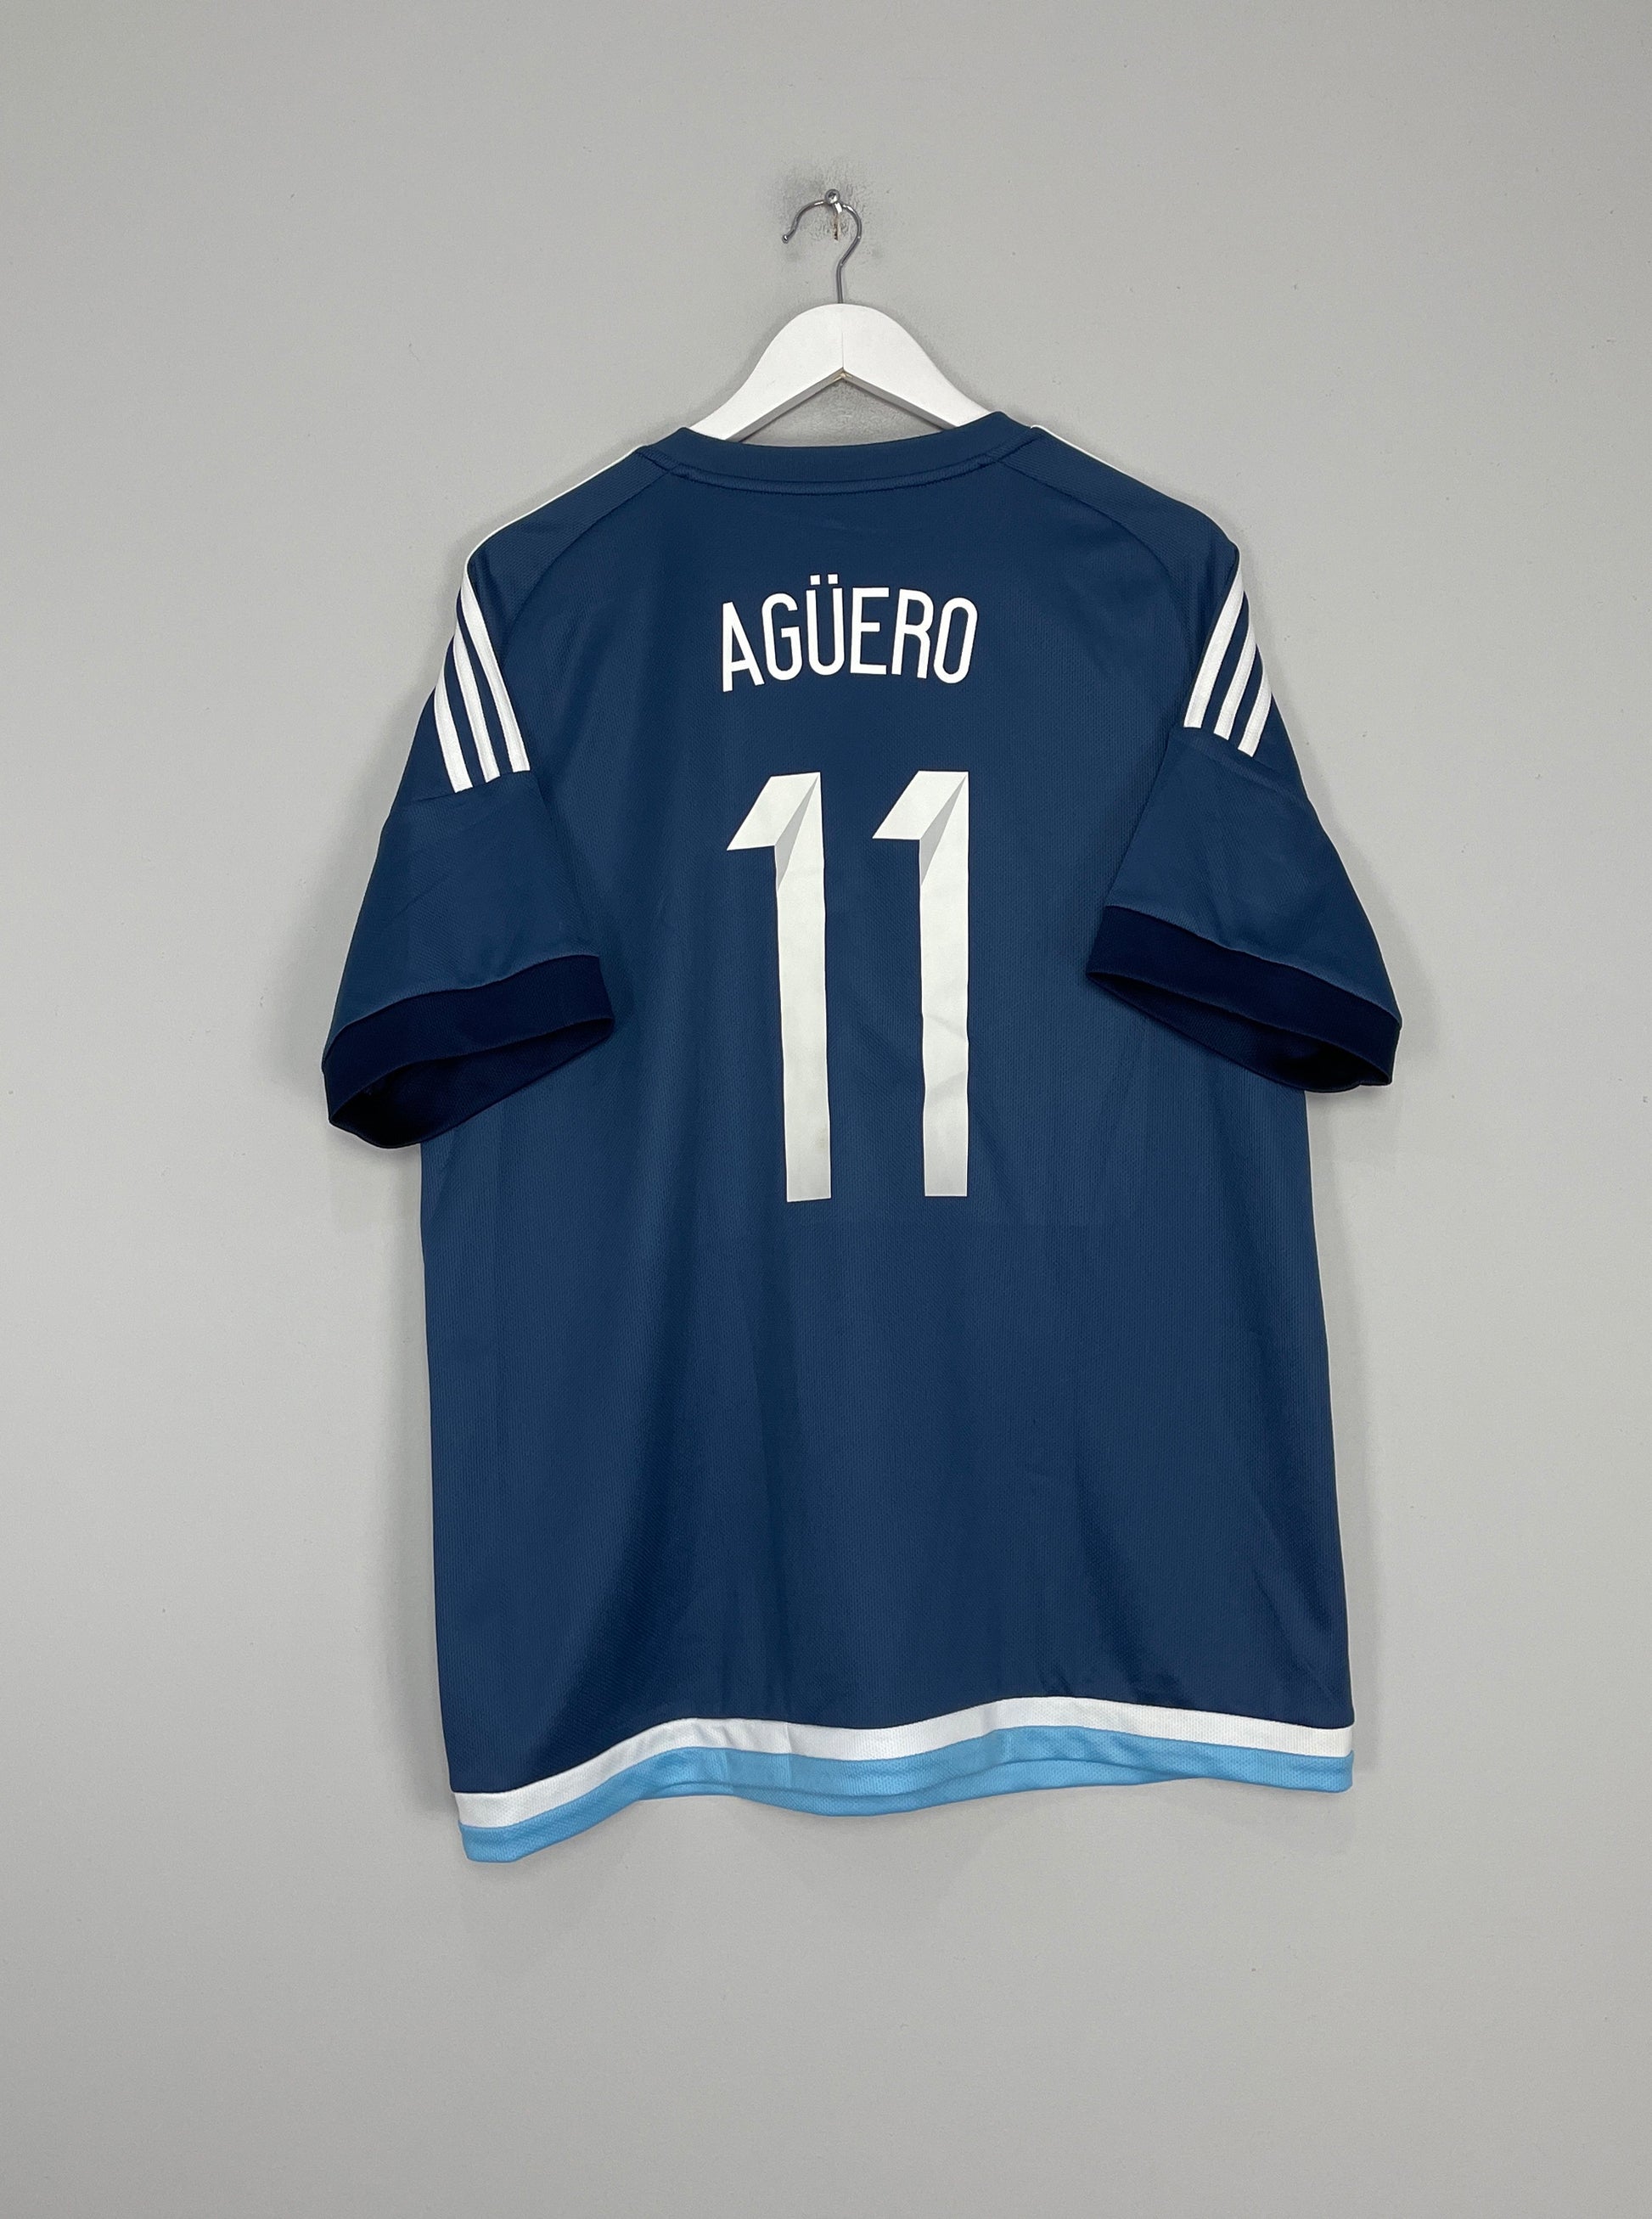 2015/16 ARGENTINA AGUERO #11 AWAY SHIRT (XL) ADIDAS